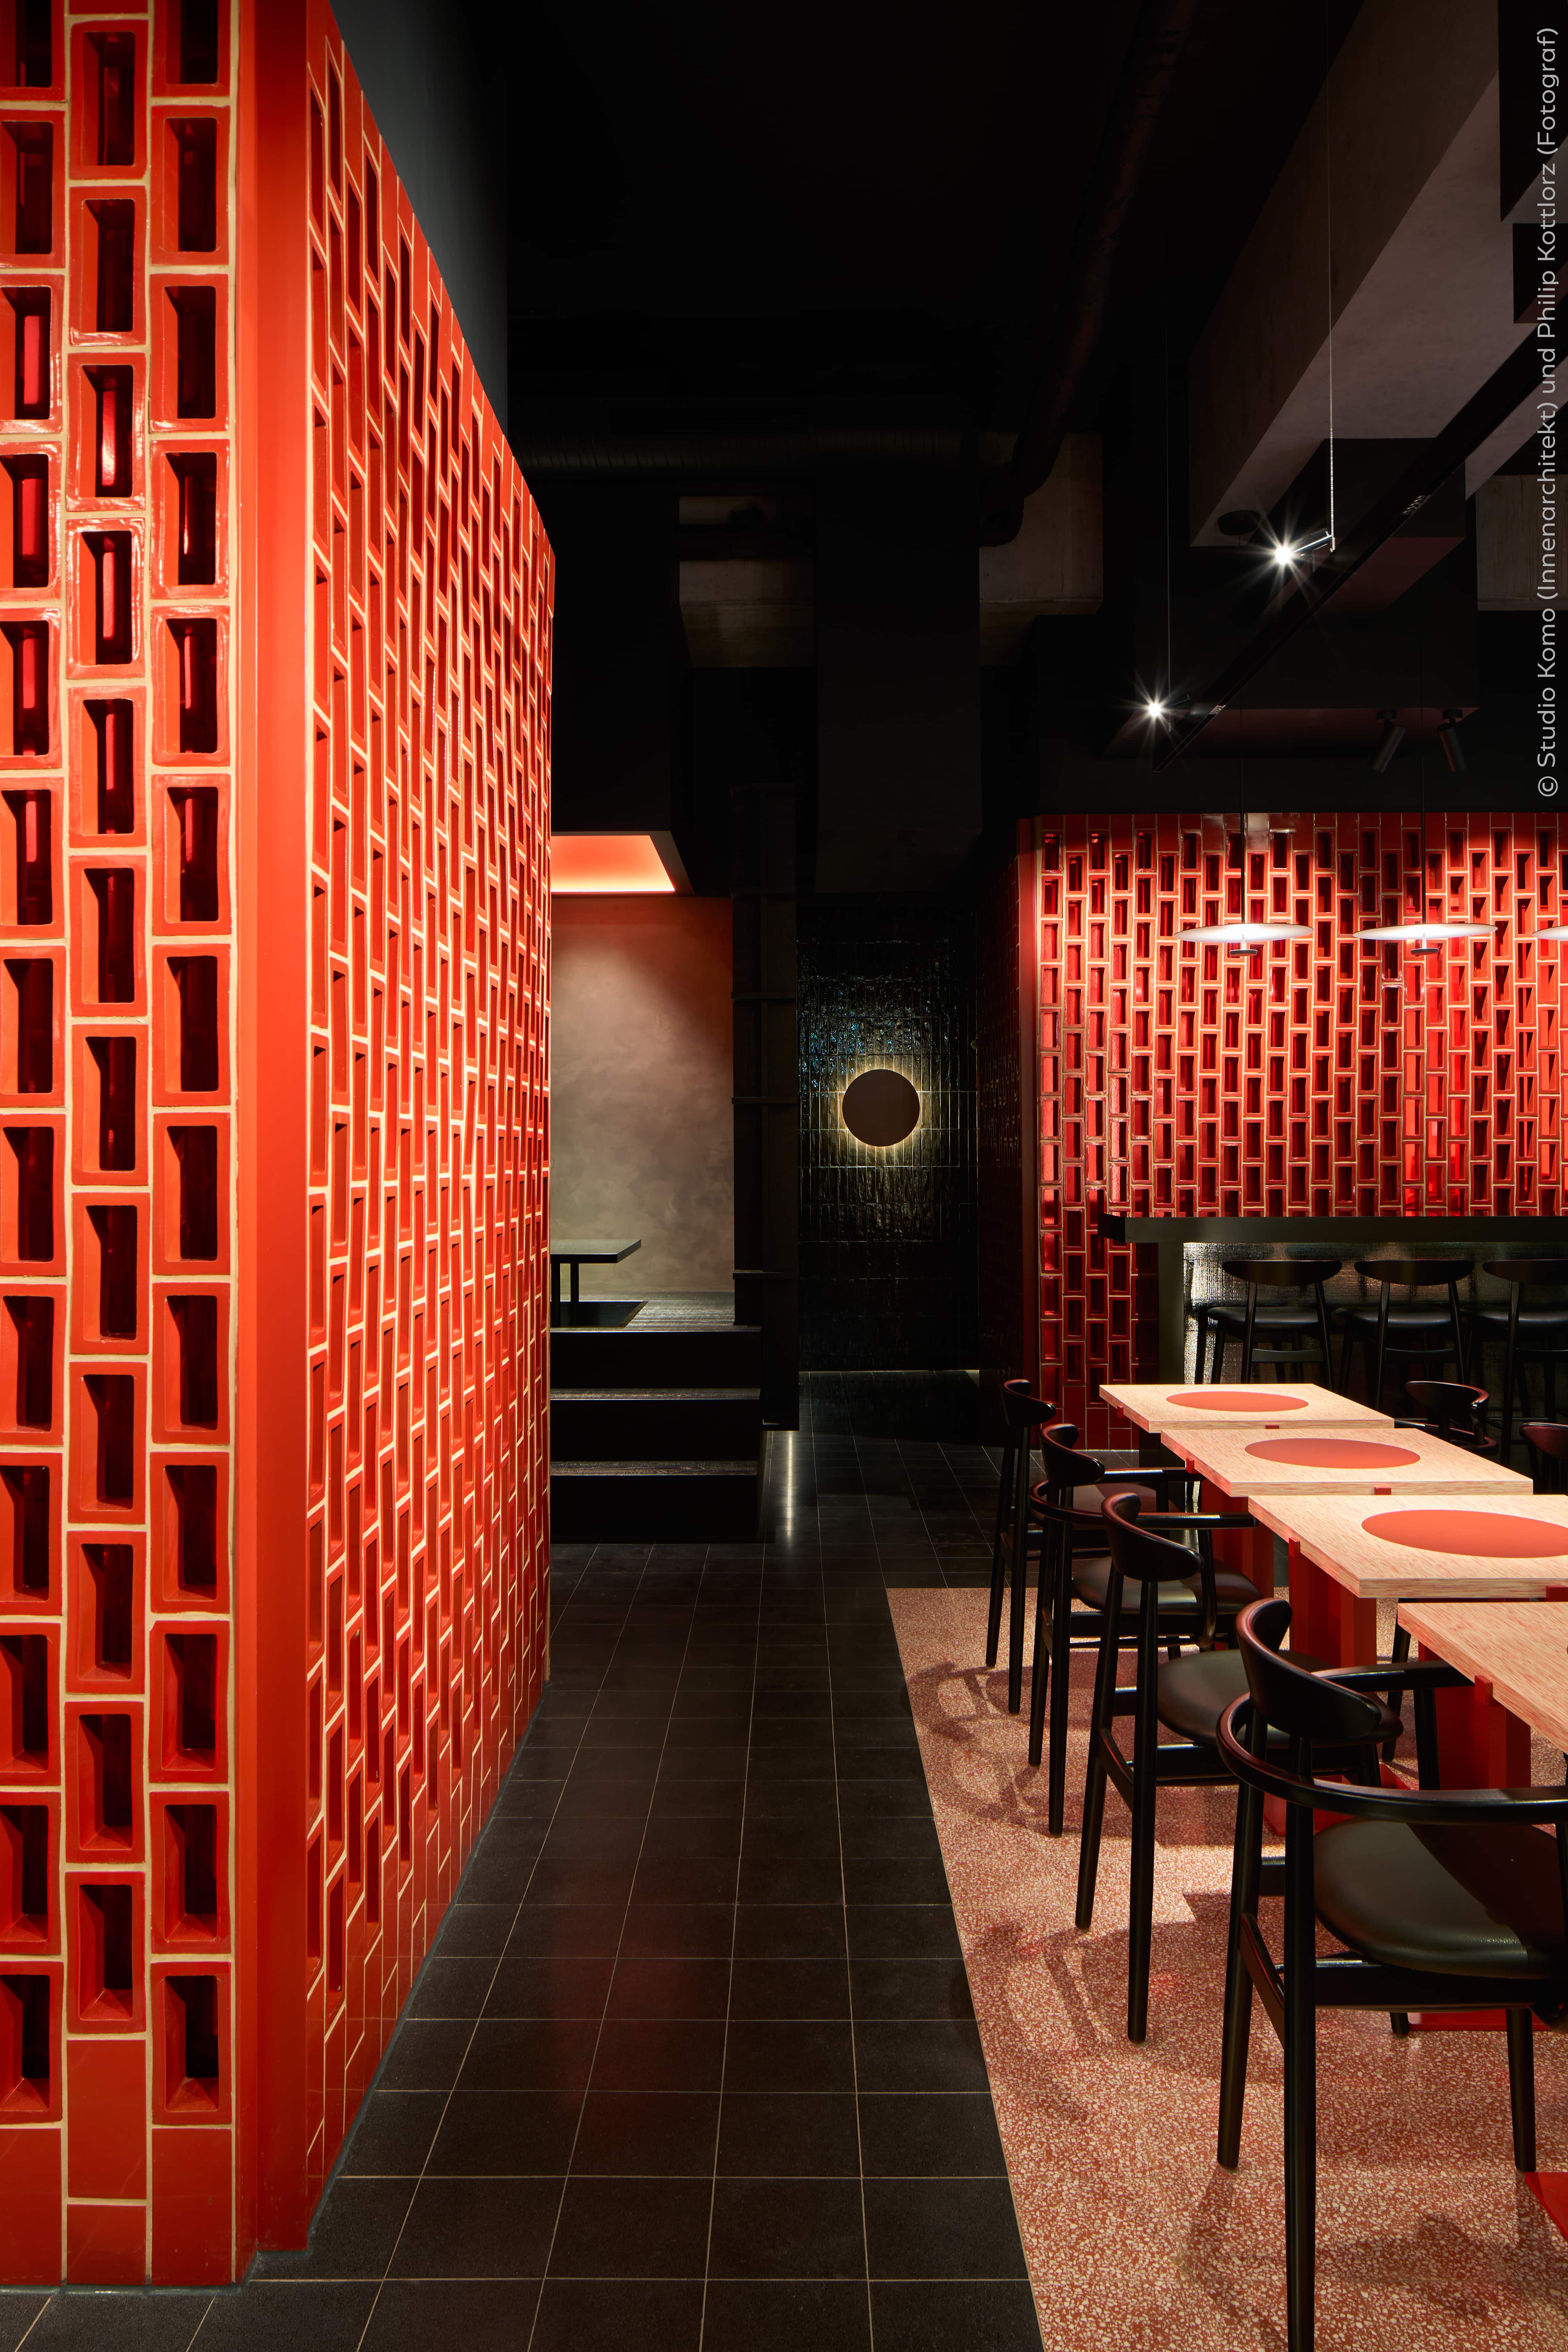 Japanisches Restaurant in Stuttgart mit VIA Terrazzoplatten in rot und schwarz